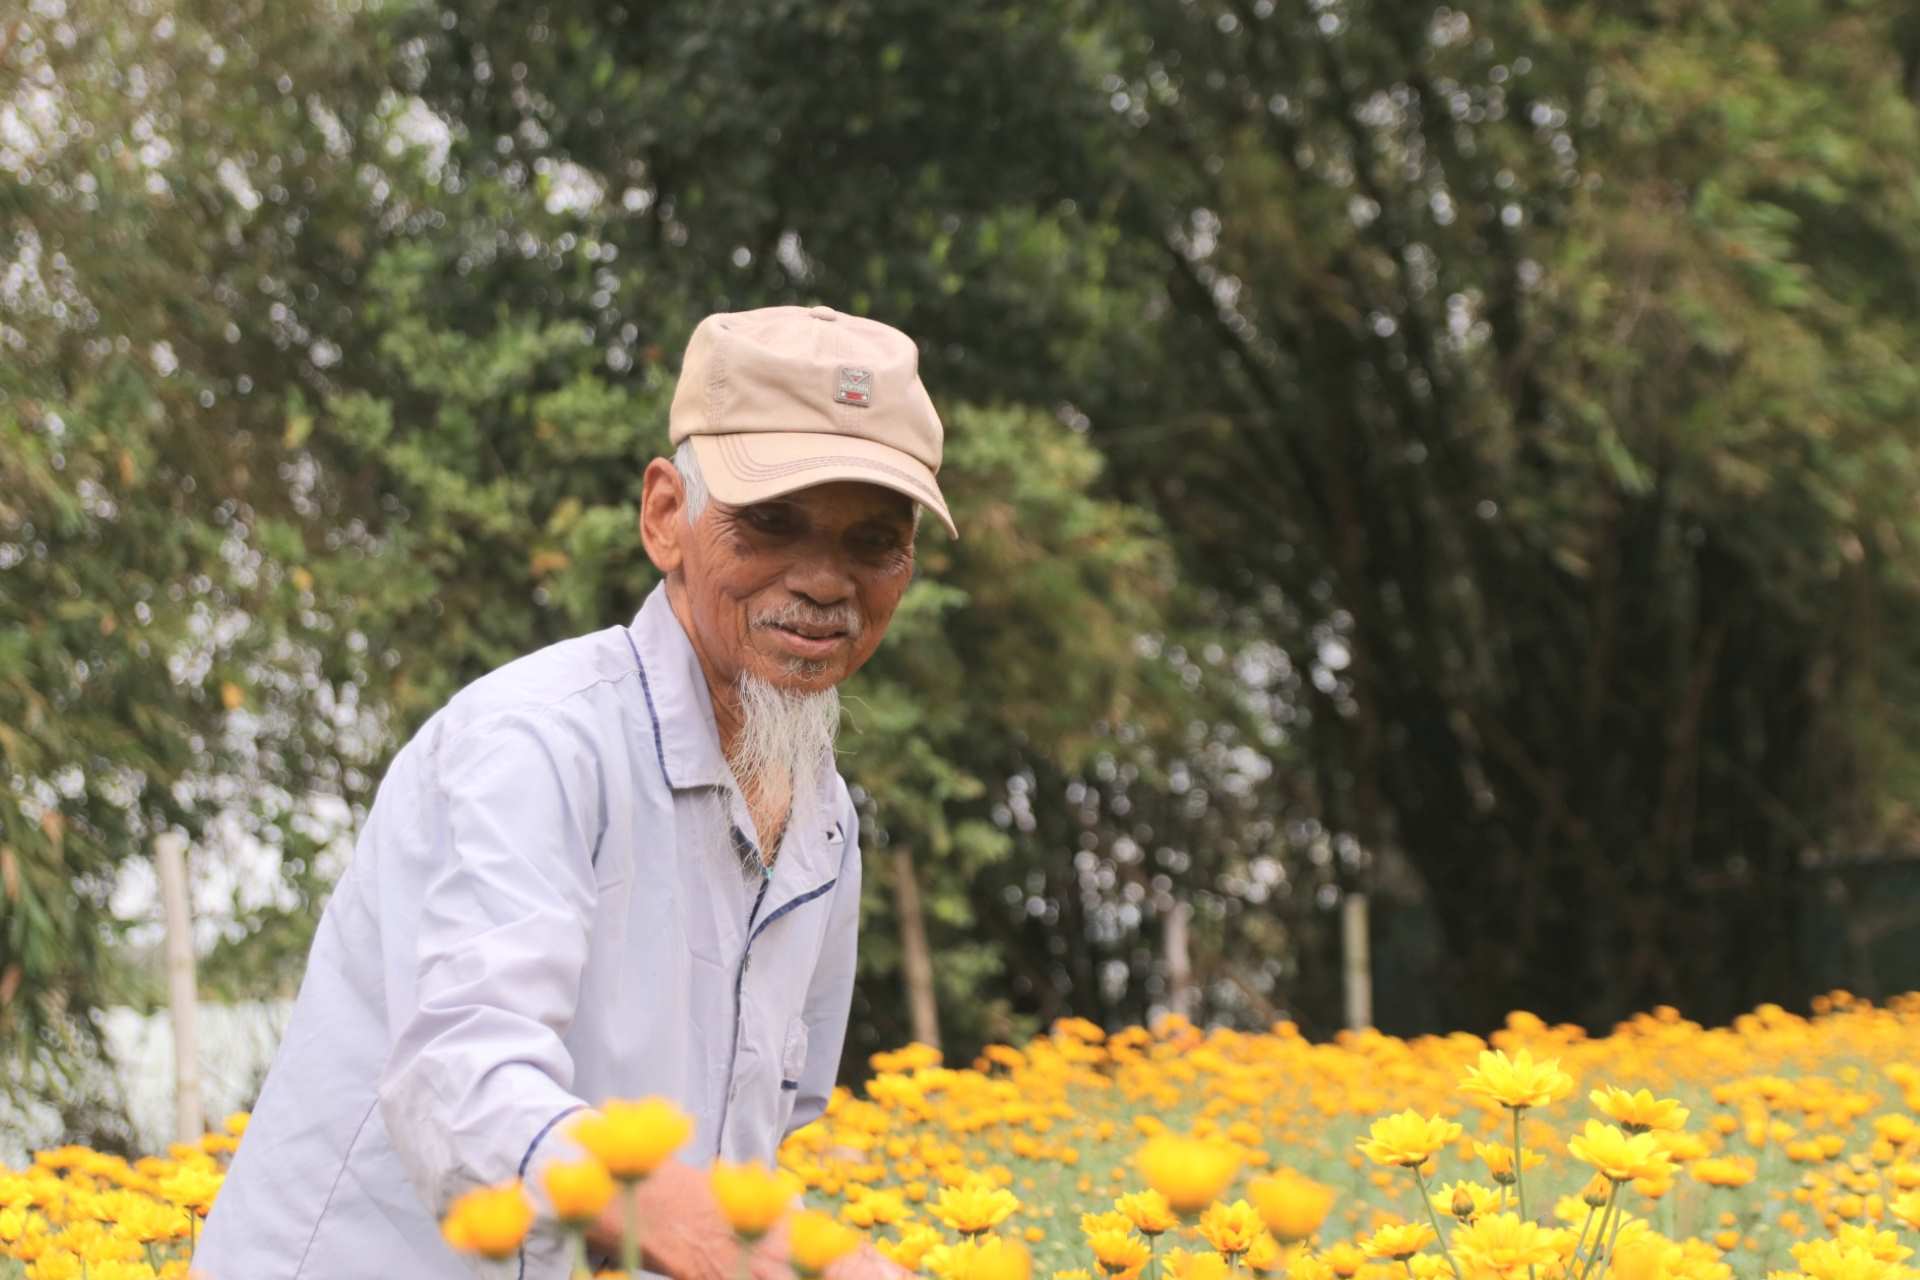 Vườn hoa nhỏ của ông Nguyễn Văn Khai (88 tuổi). Tuy vừa bị bệnh nặng xong nhưng ông vẫn tiếp tục công việc trồng hoa của mình. Theo ông Khai, hầu hết những công đoạn canh tác, chăm sóc hoa đều do tay ông làm, năm nào cũng thu về 5 đến 7 triệu đồng để ăn tết.